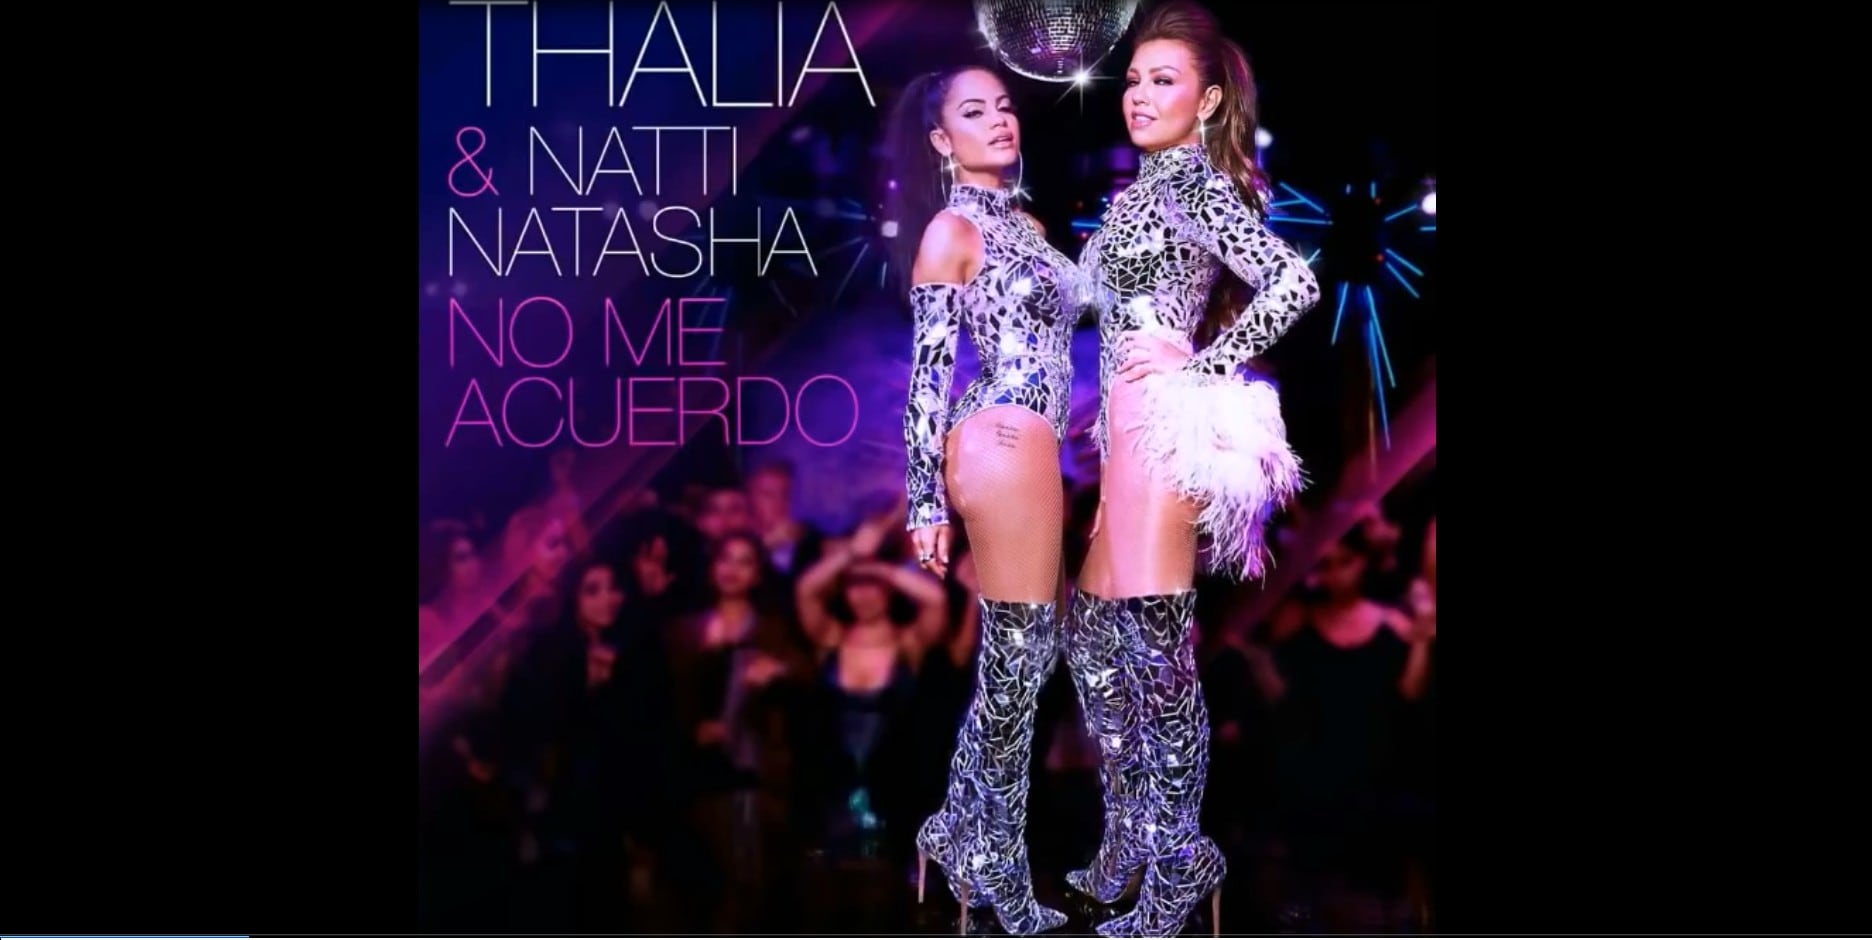 Thalía - No Me Acuerdo (Preview) ft Natti Natasha